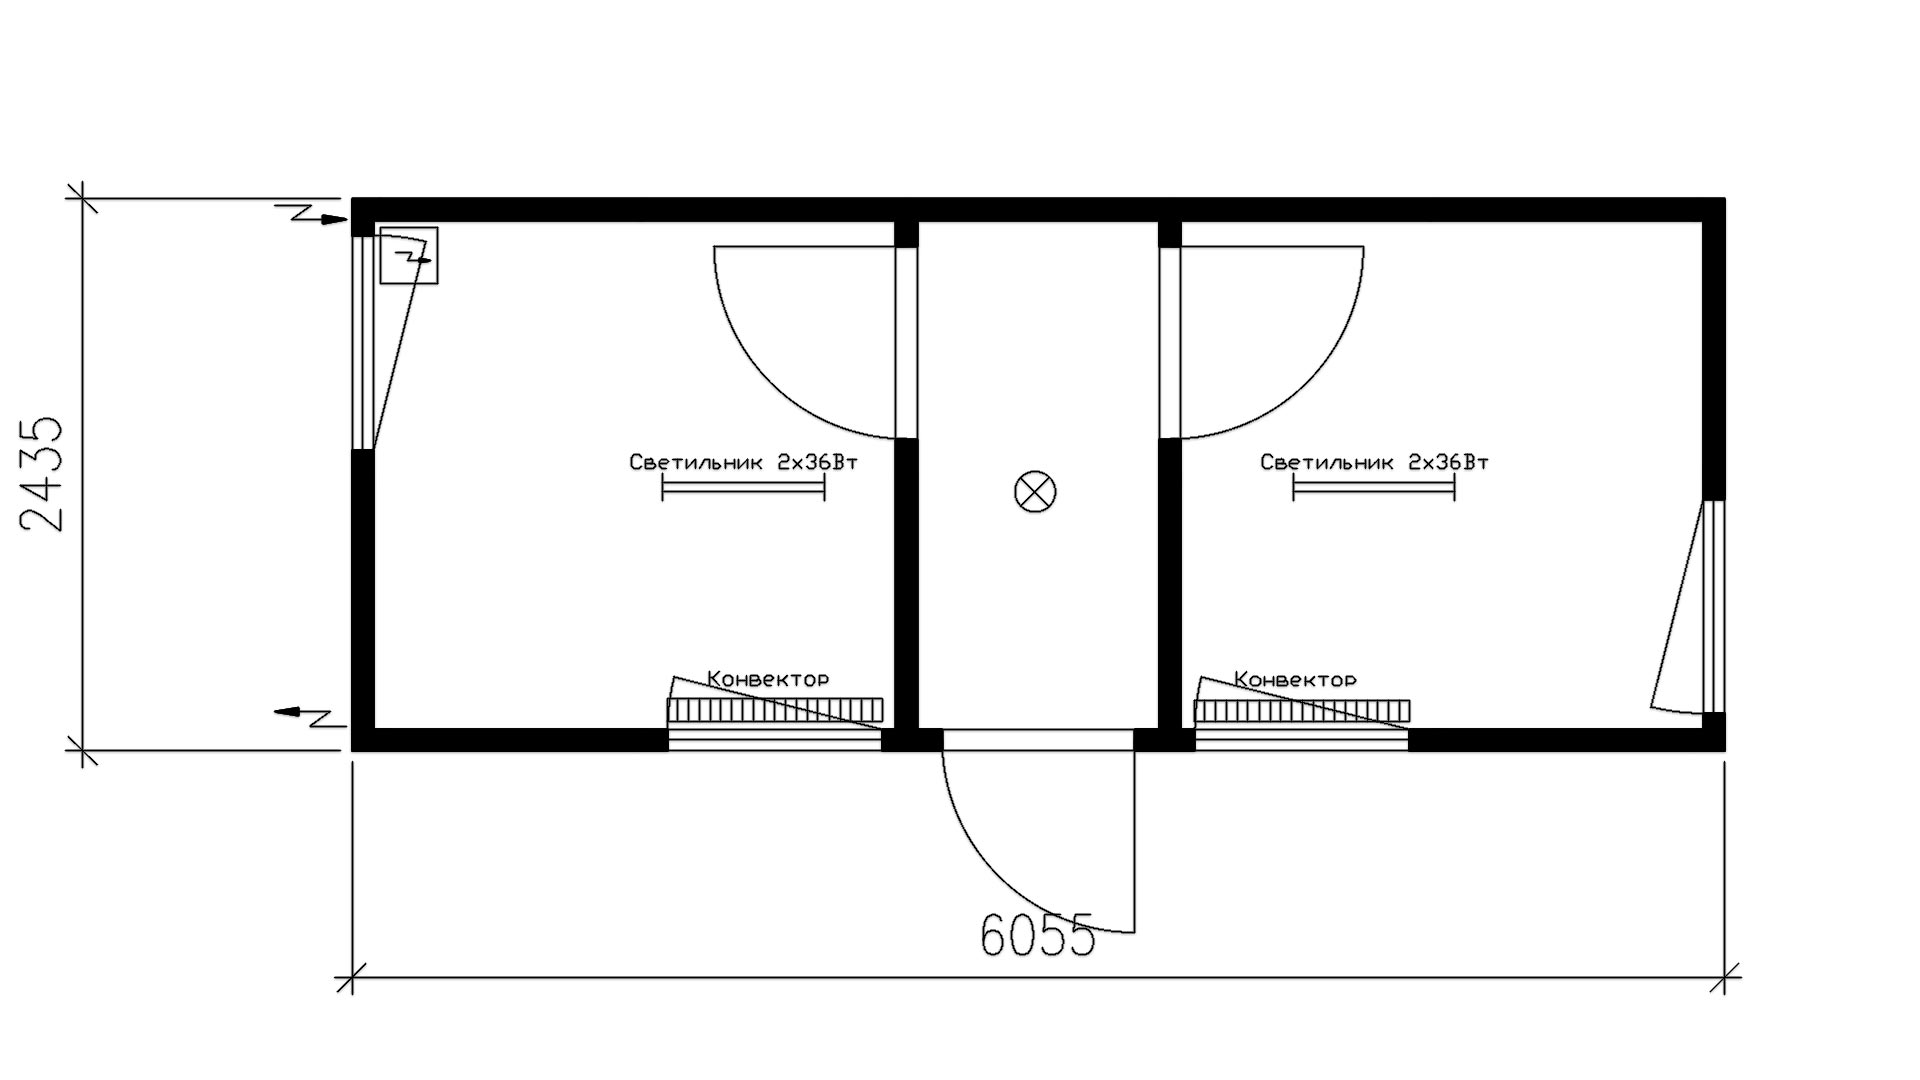 Планировка блок-контейнера распашонка (4 окна, 2 двери внутренние, 1 дверь входная) 20-футов, размеры: 6055/2435/2750 (Д/Ш/В) мм